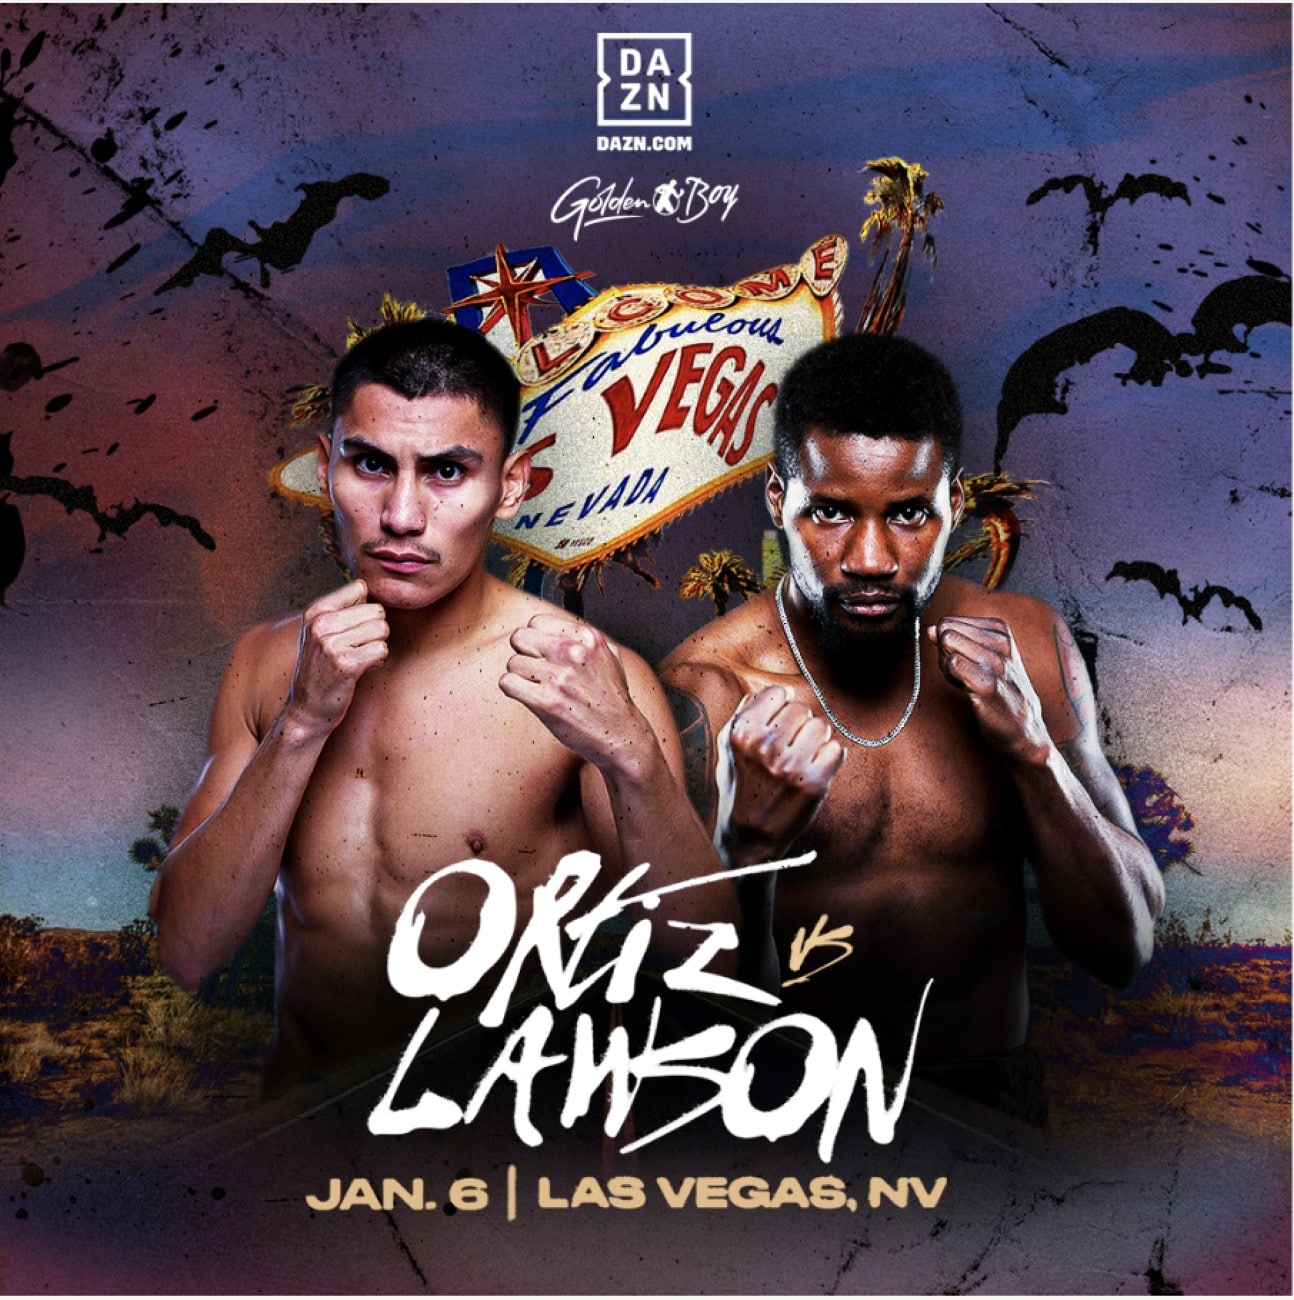 Ortiz Jr vs. Lawson - DAZN - January 6 - 9 pm ET